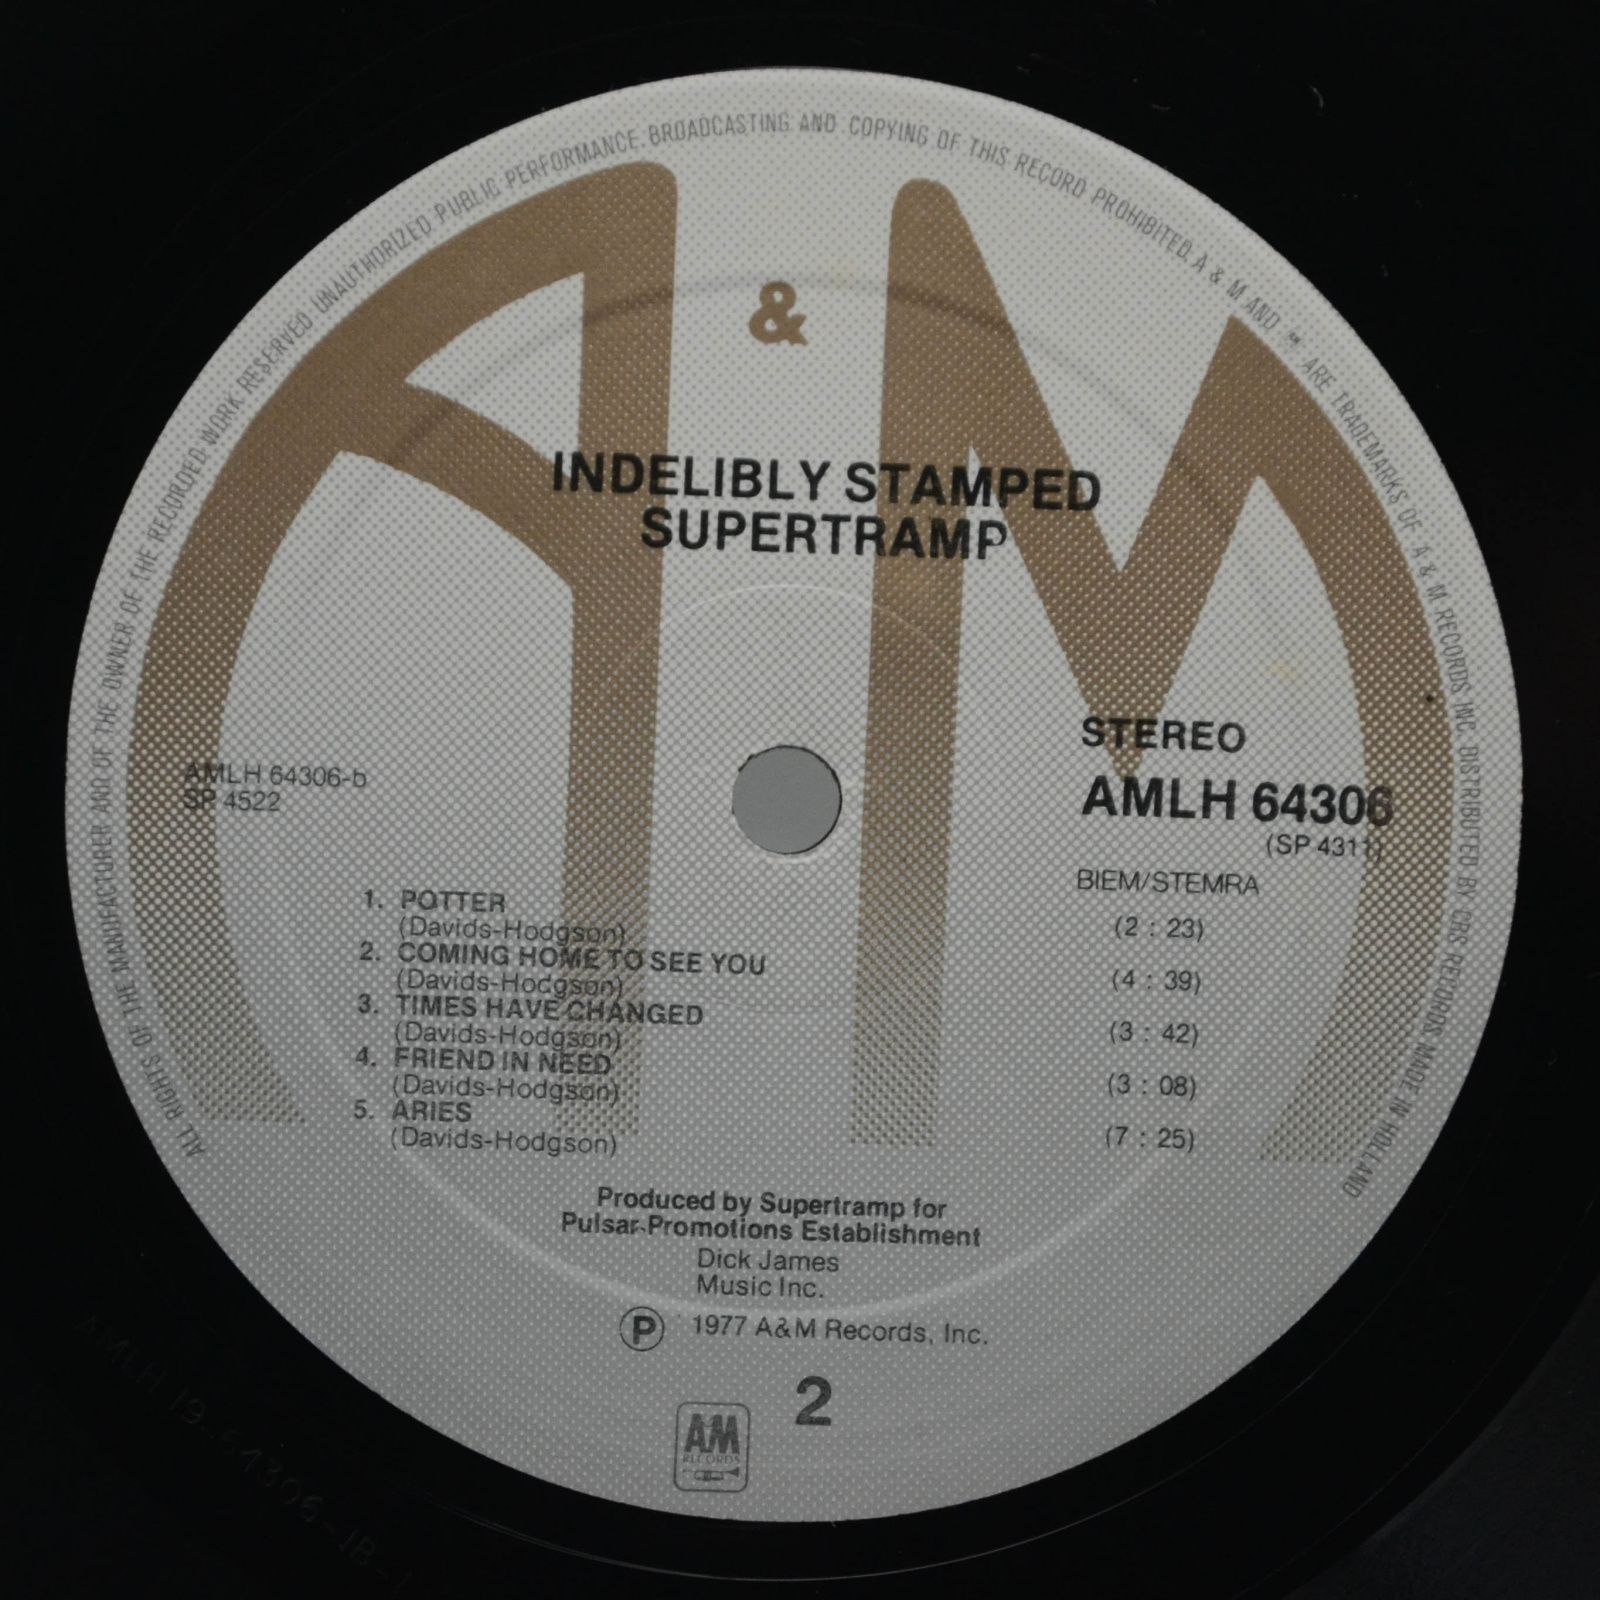 Supertramp — Indelibly Stamped, 1971